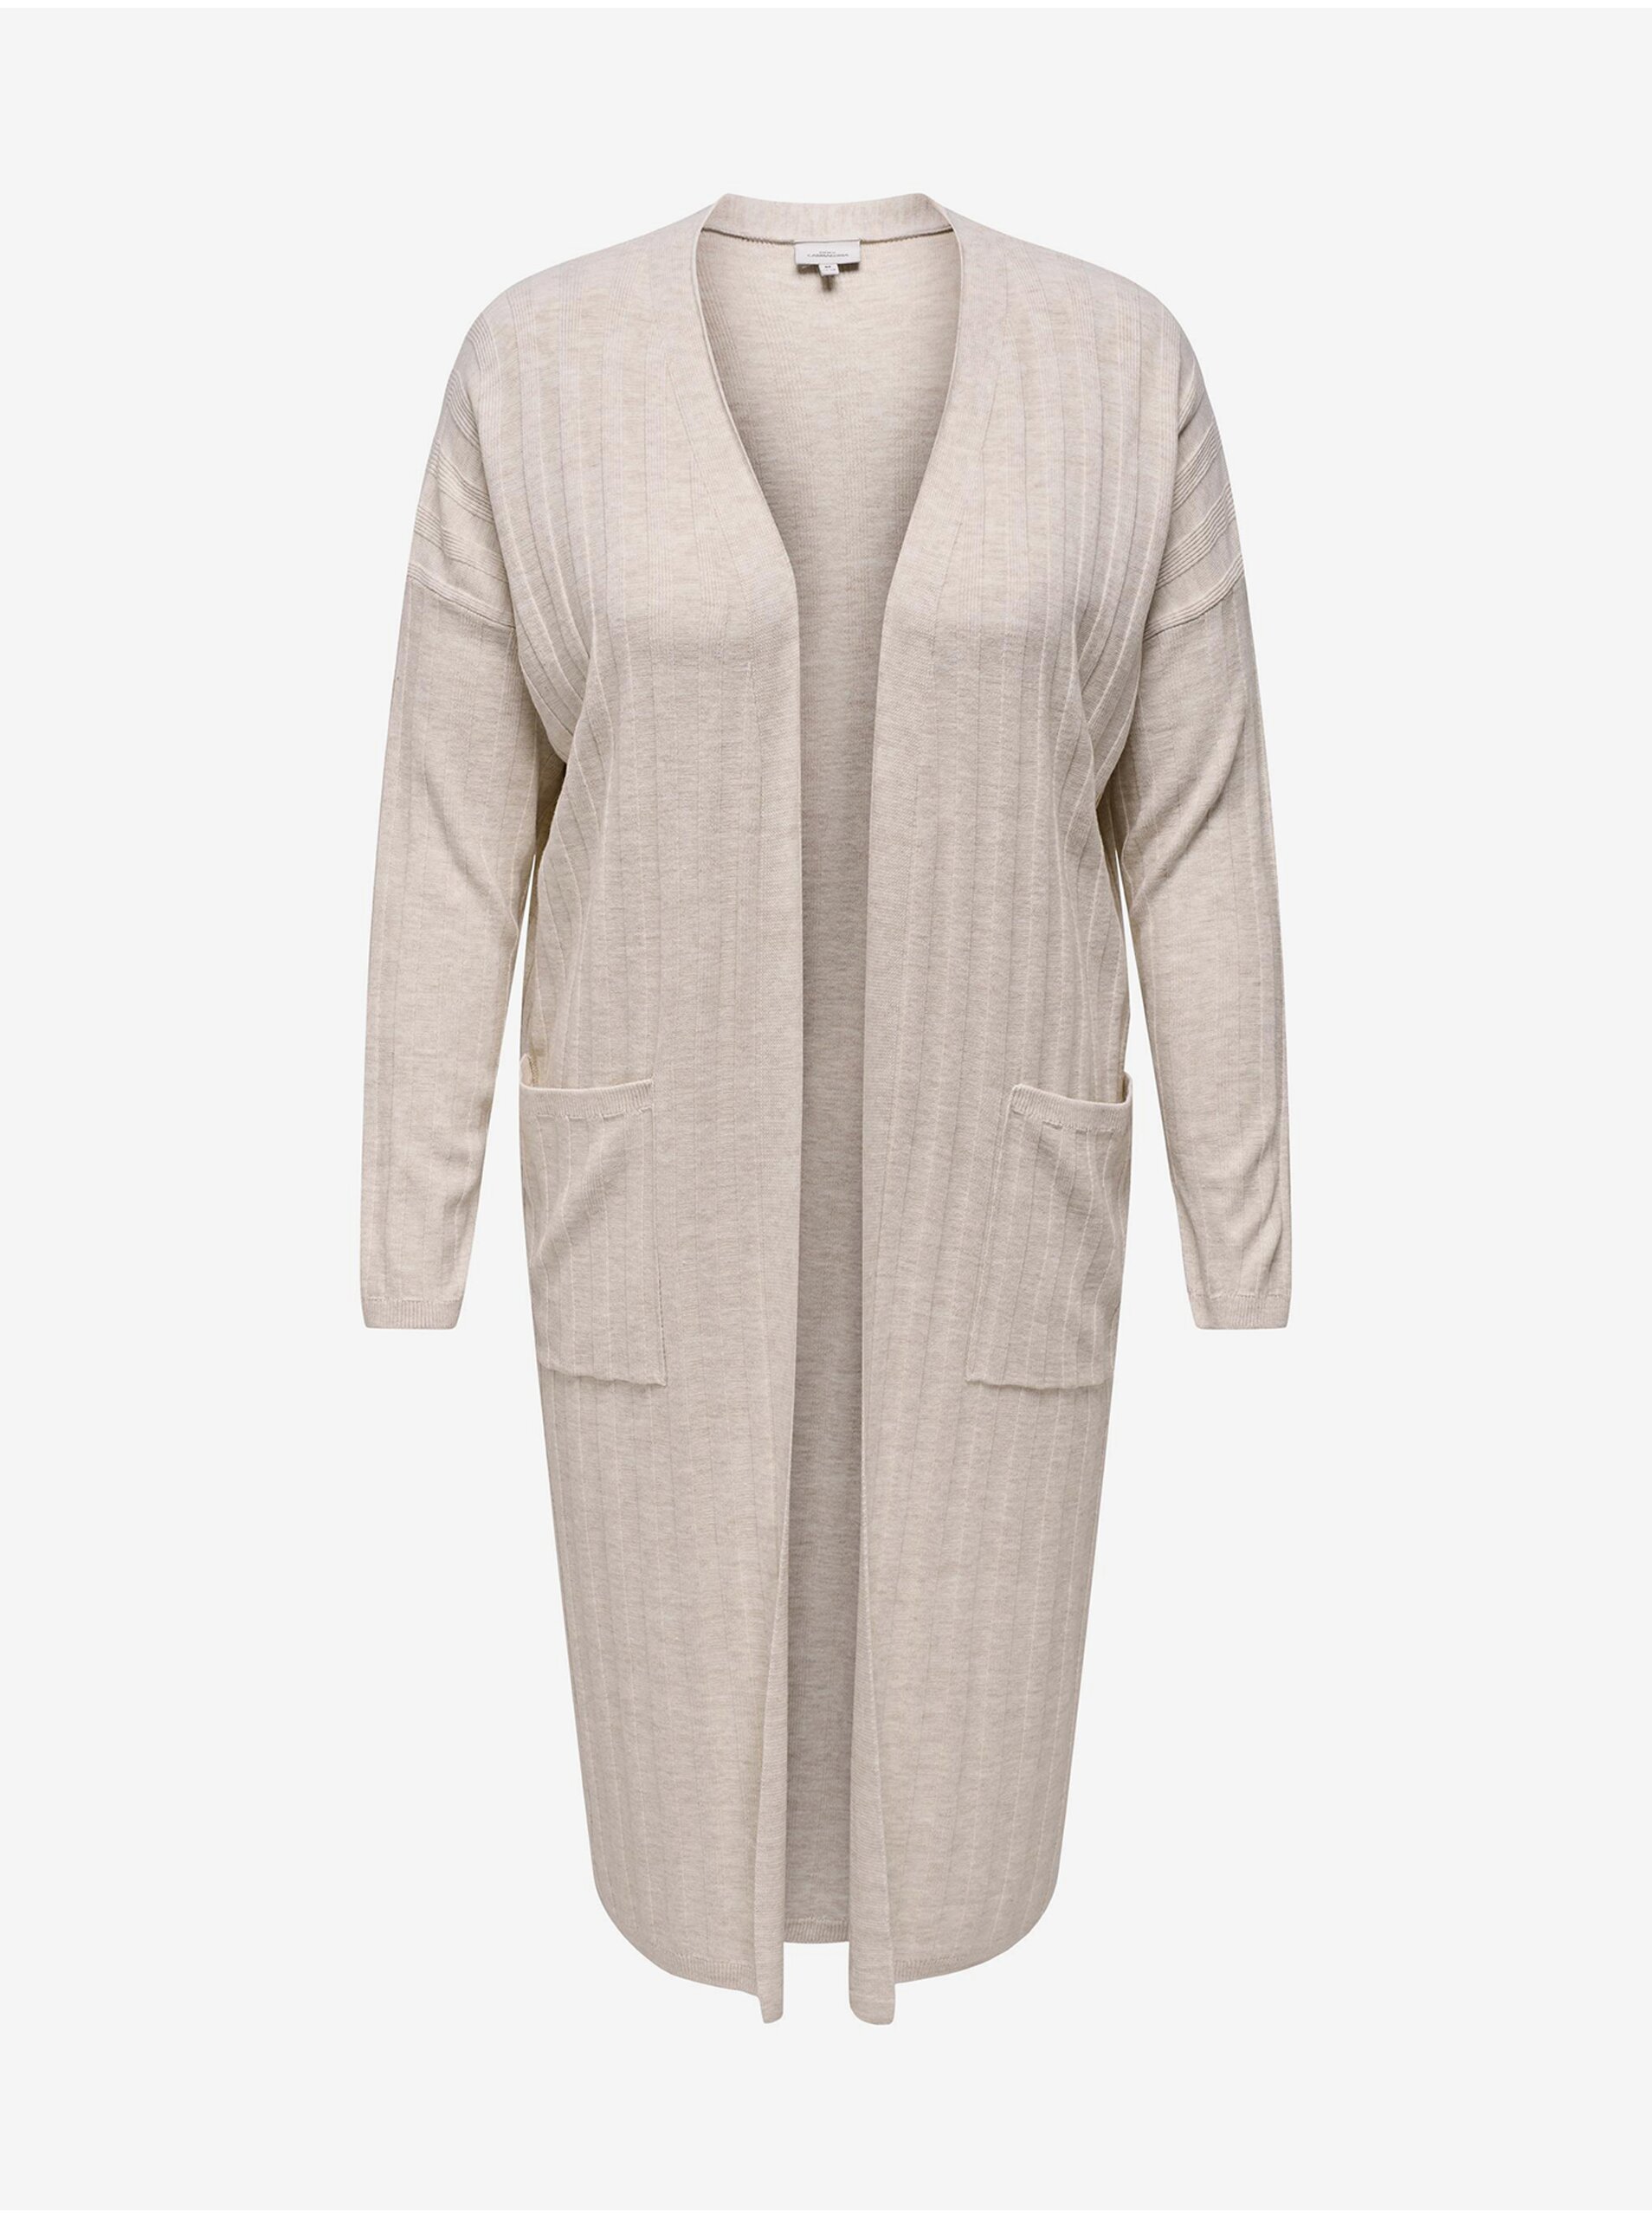 E-shop Béžový dámsky dlhý sveter ONLY CARMAKOMA New Tessa